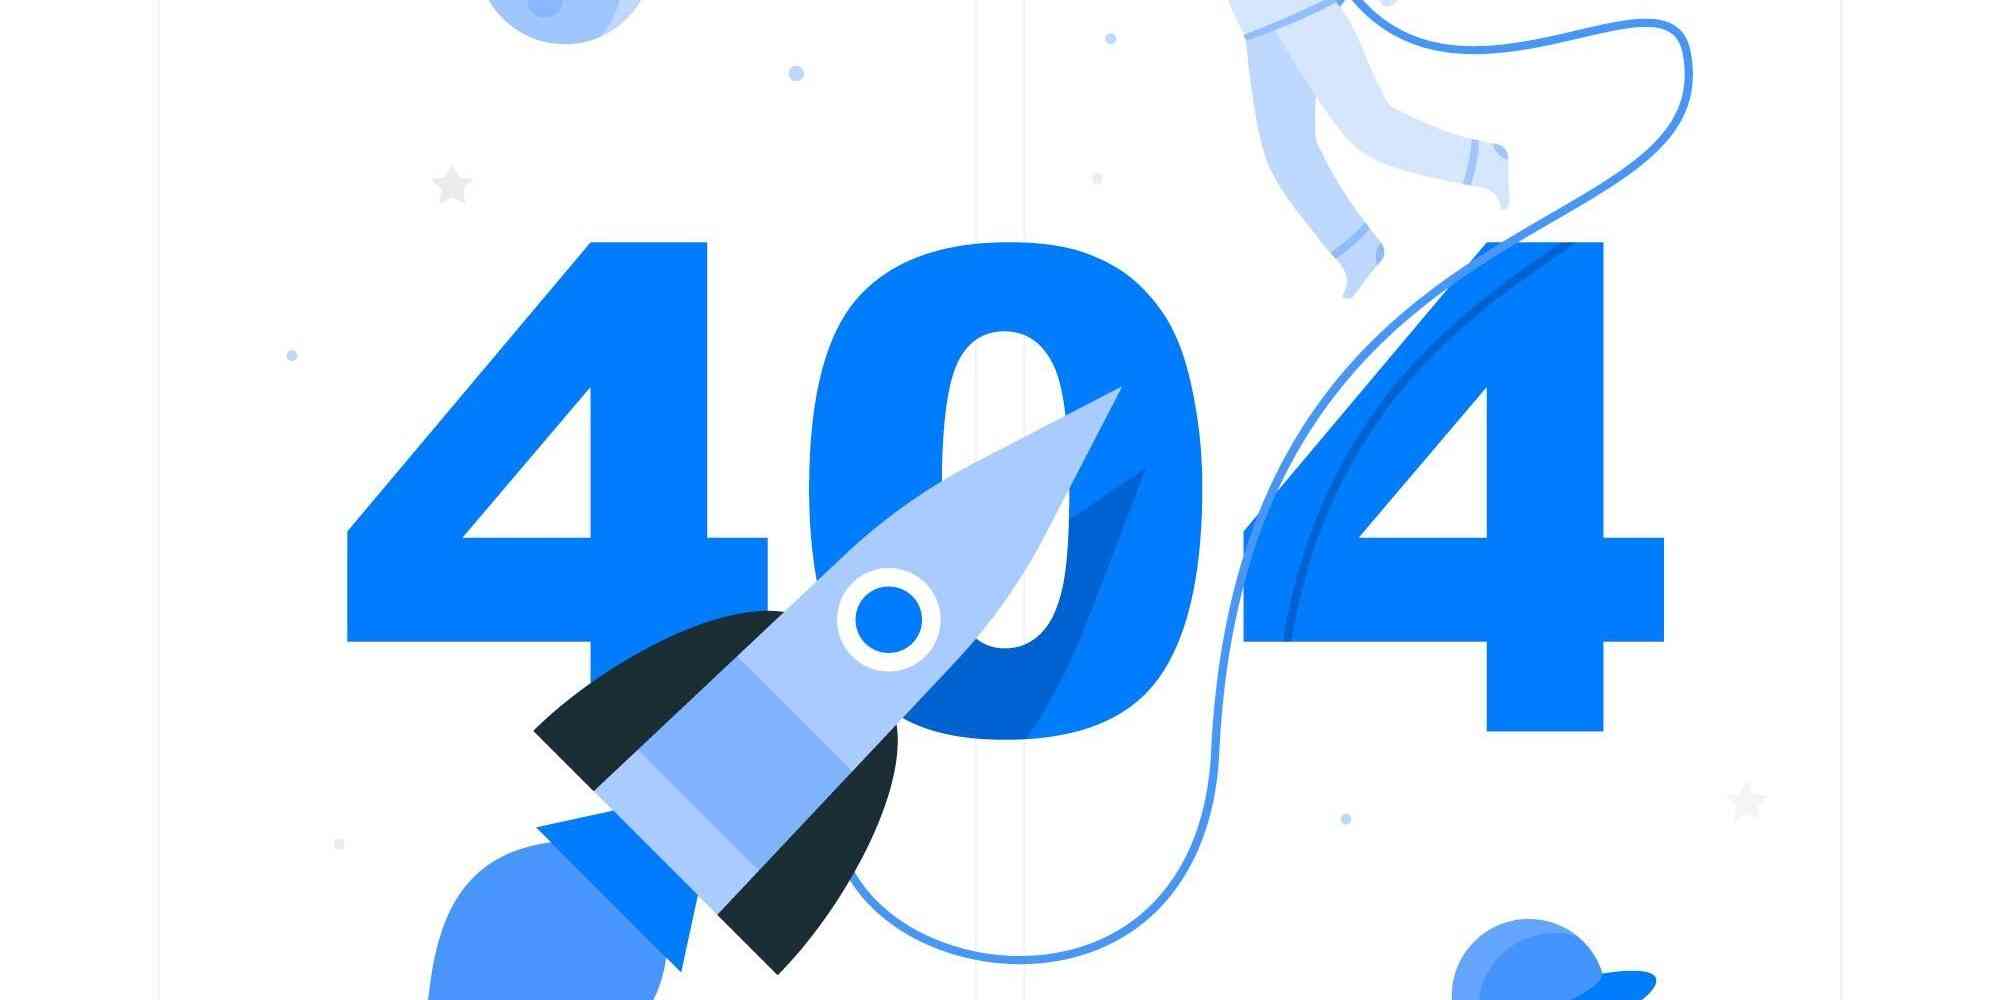 一个404的页面，其中包含一个蓝色的火箭和一些其他的设计元素。